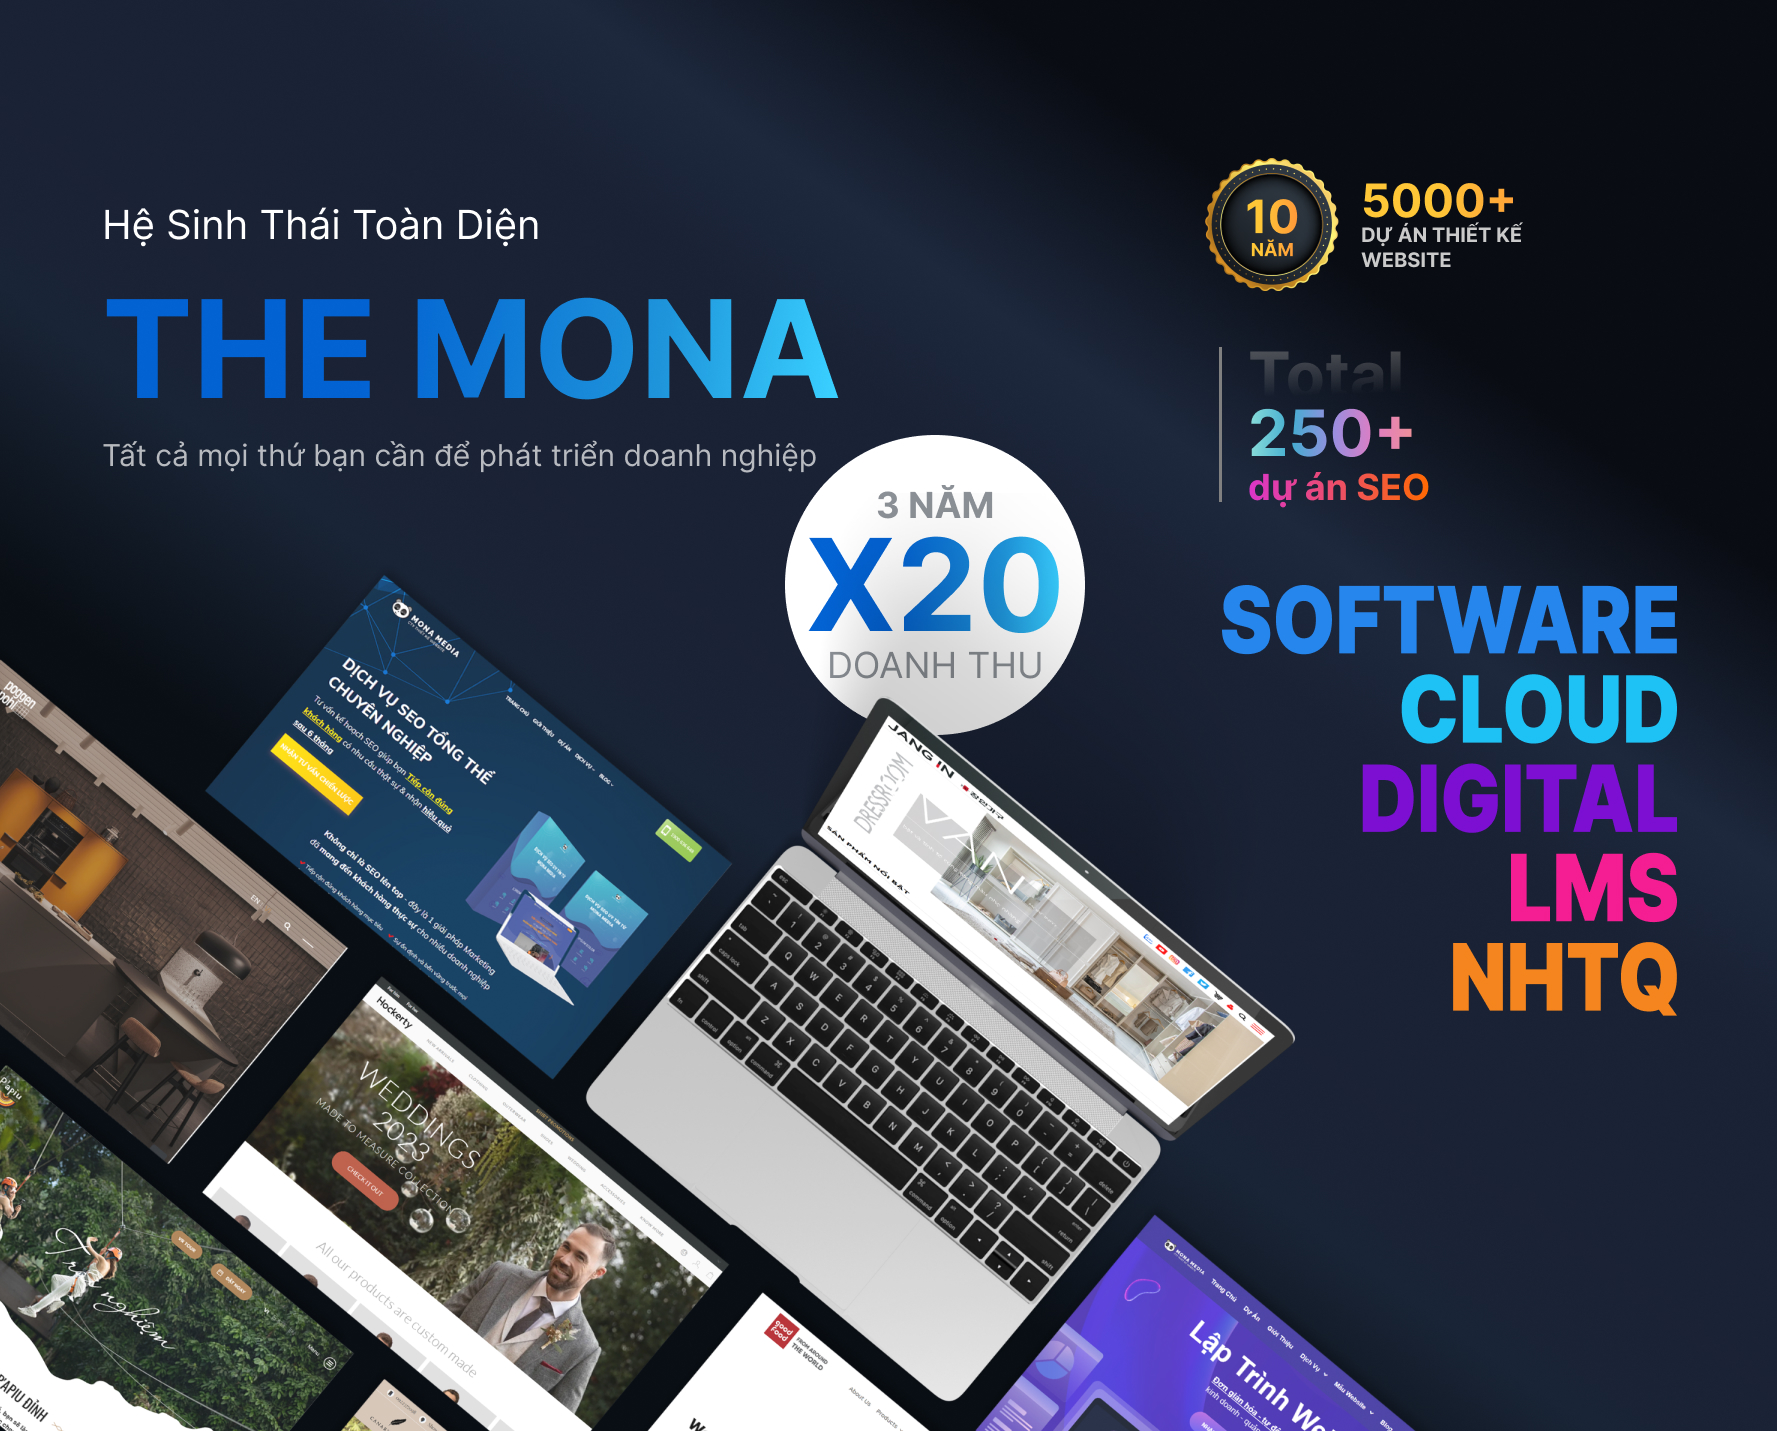 Mona Media – Công ty thiết kế website chuyên nghiệp tại TPHCM